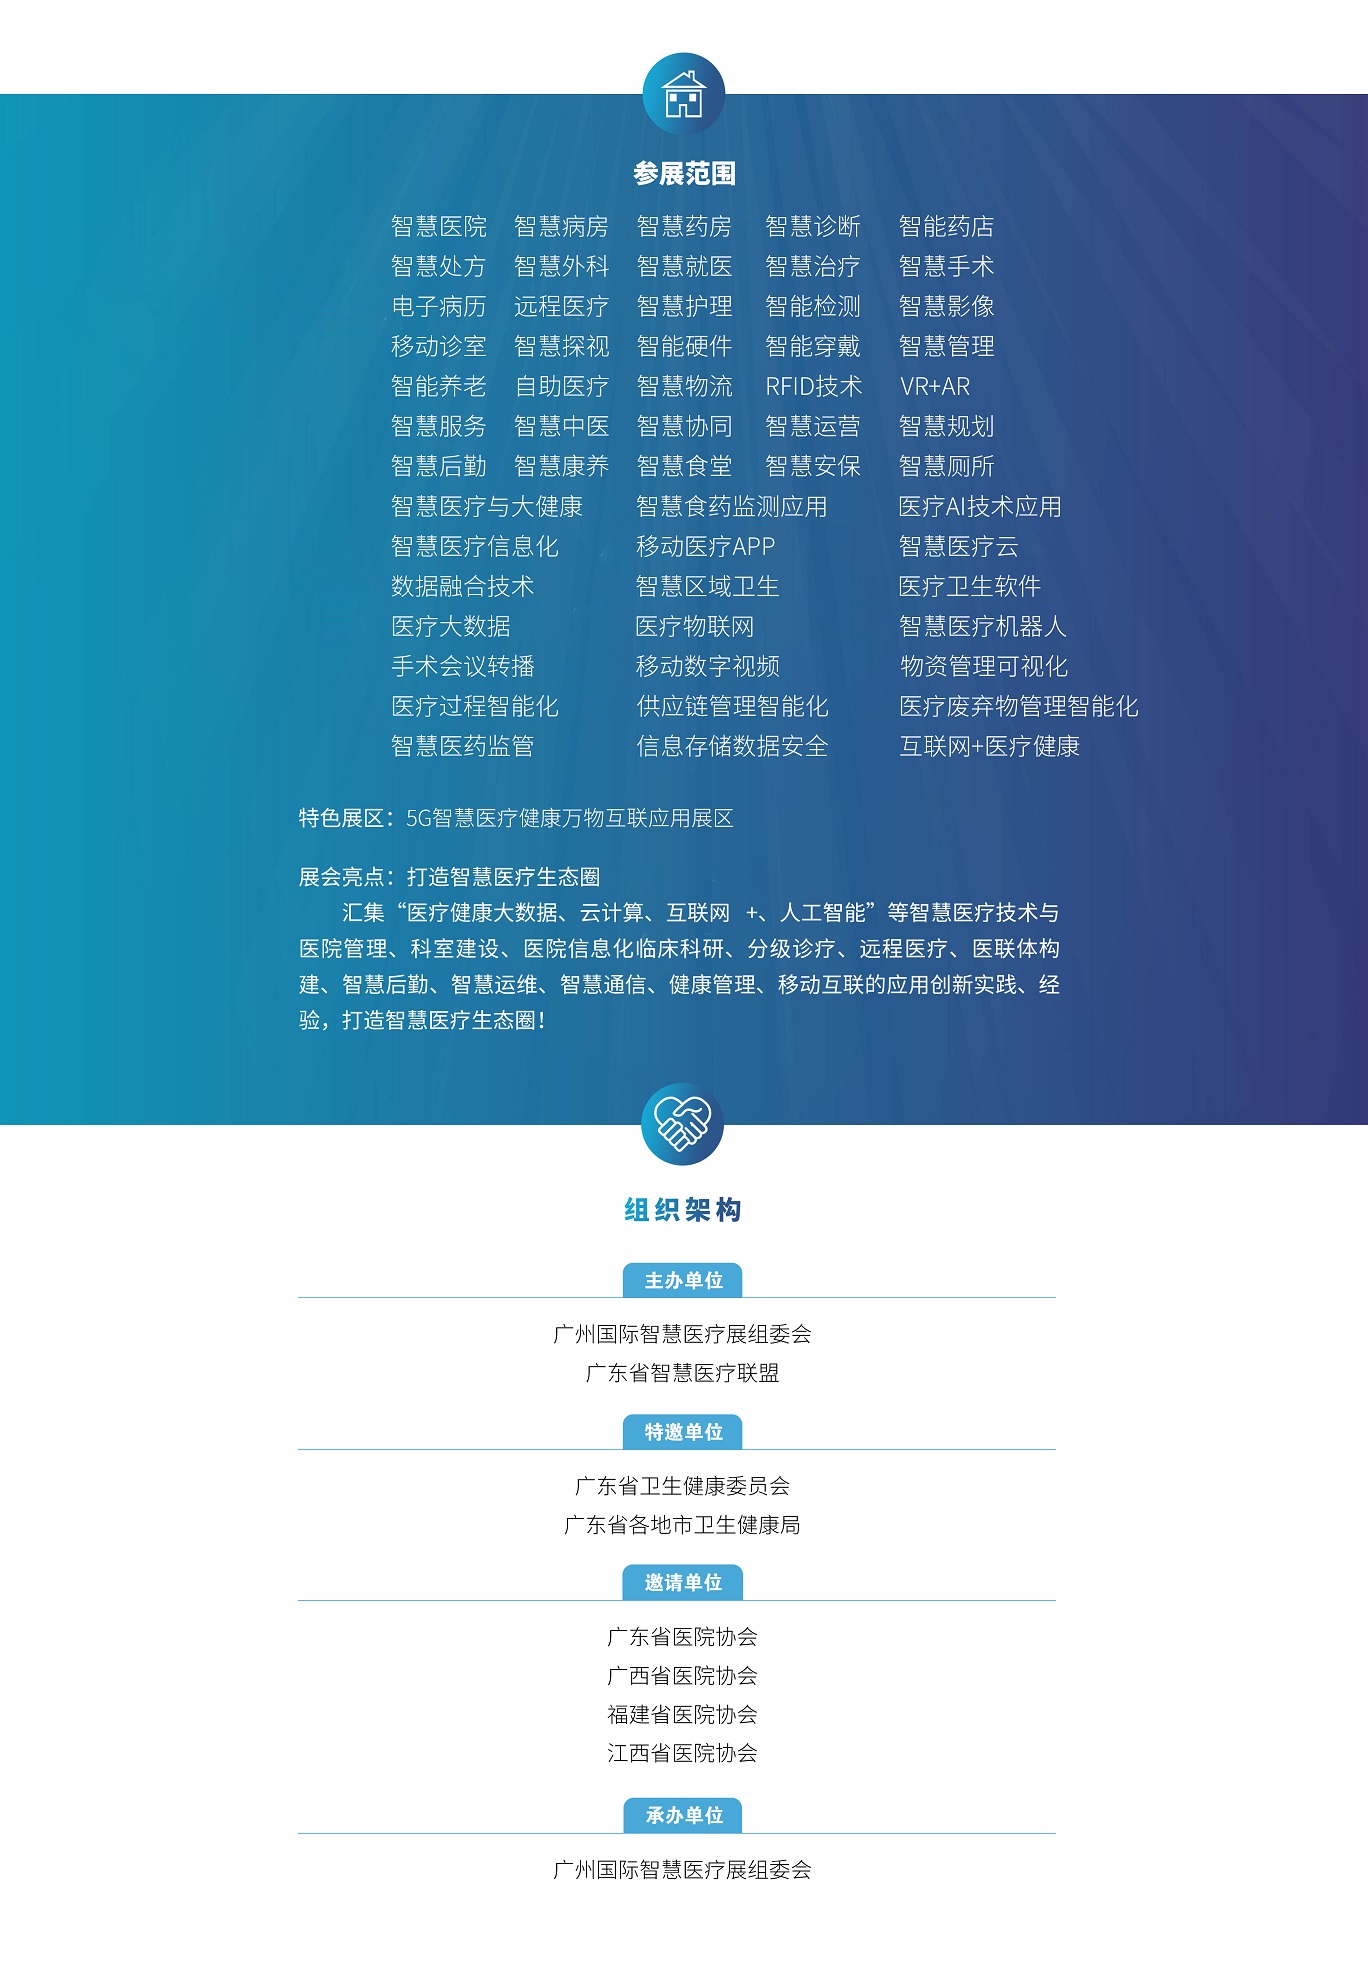 2020广州国际智慧医疗展览会.jpg